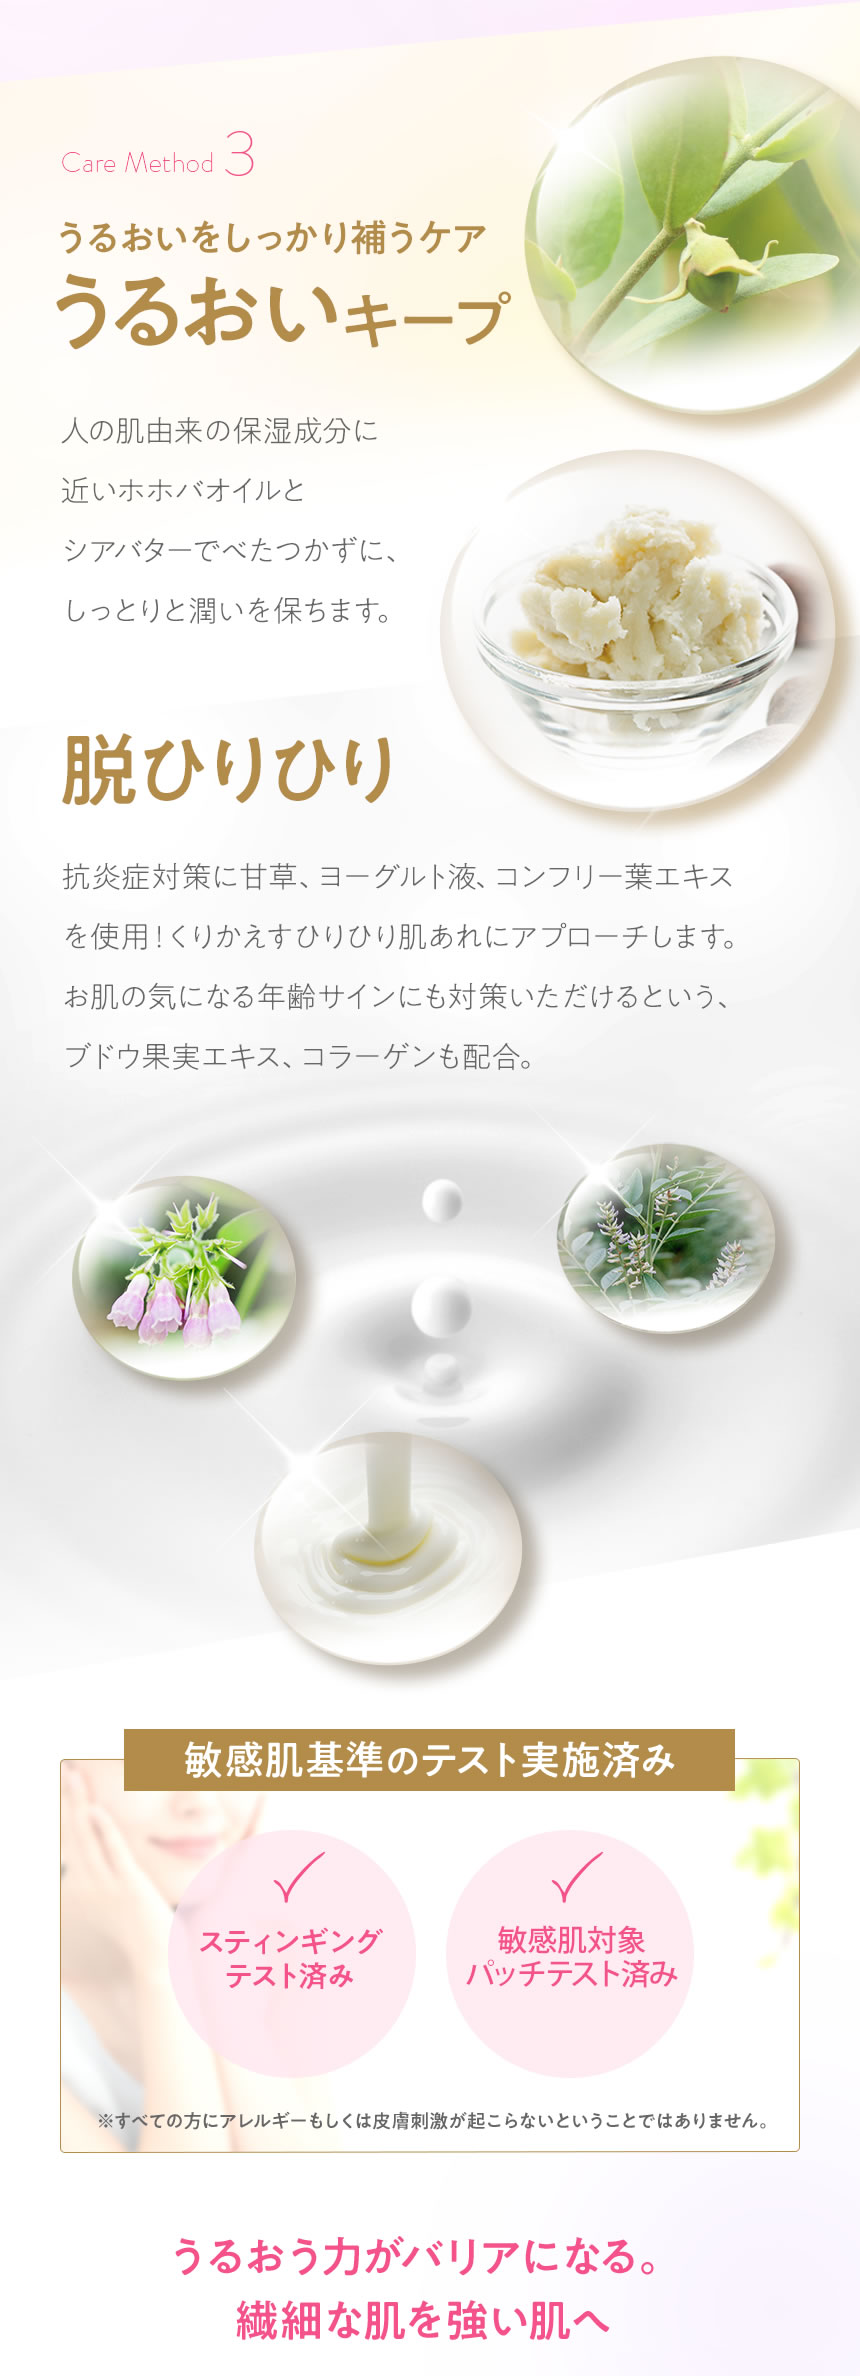 マイクロバイオプロモート リペアジェル 商品詳細 自然化粧品nanarobe ナナローブ 公式サイト